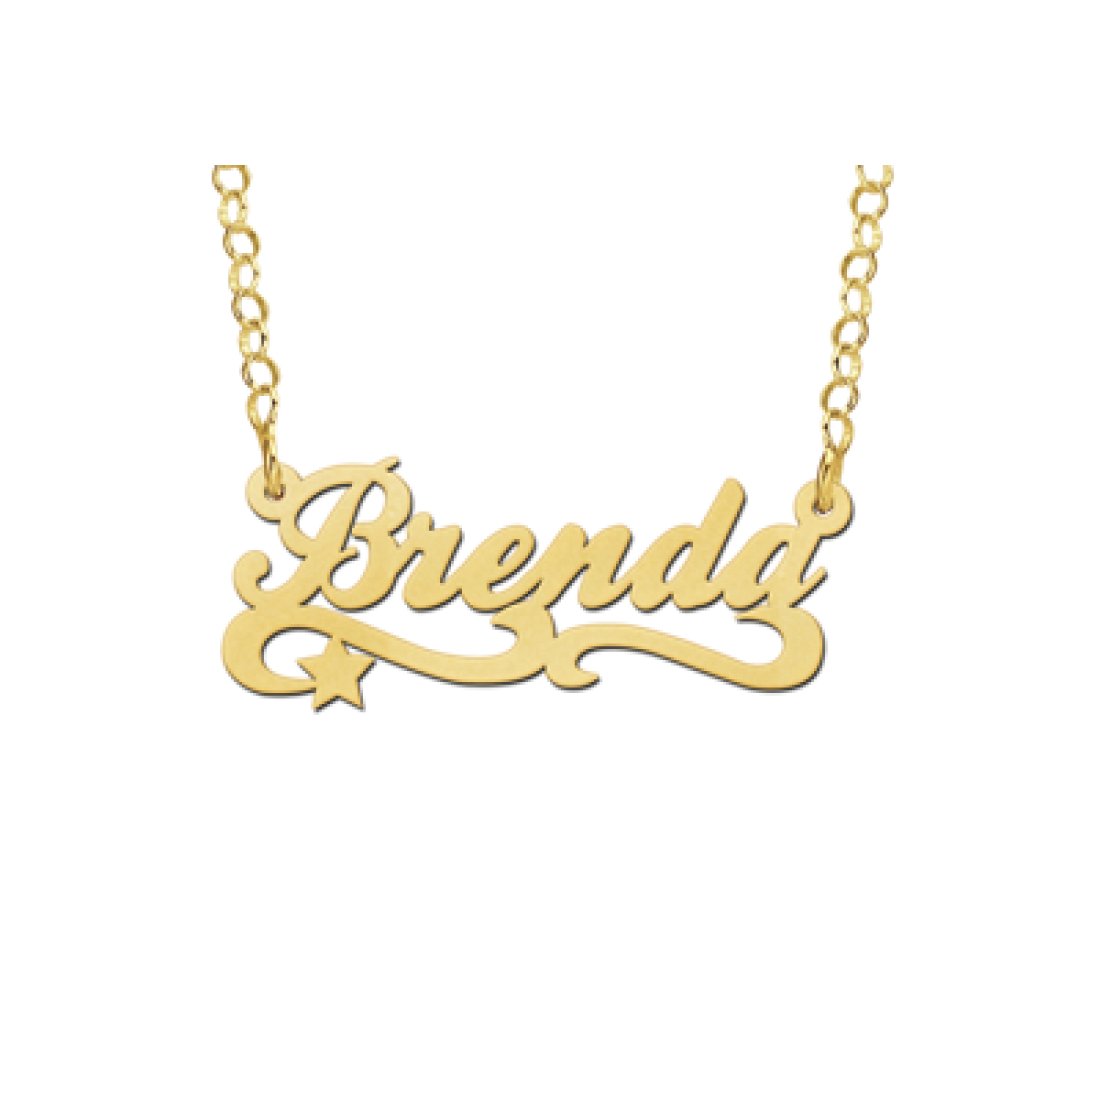 Verbeelding Onnauwkeurig Terughoudendheid Gouden kinder naamketting model Brenda / Anny van Buul Juweliers Sieraden